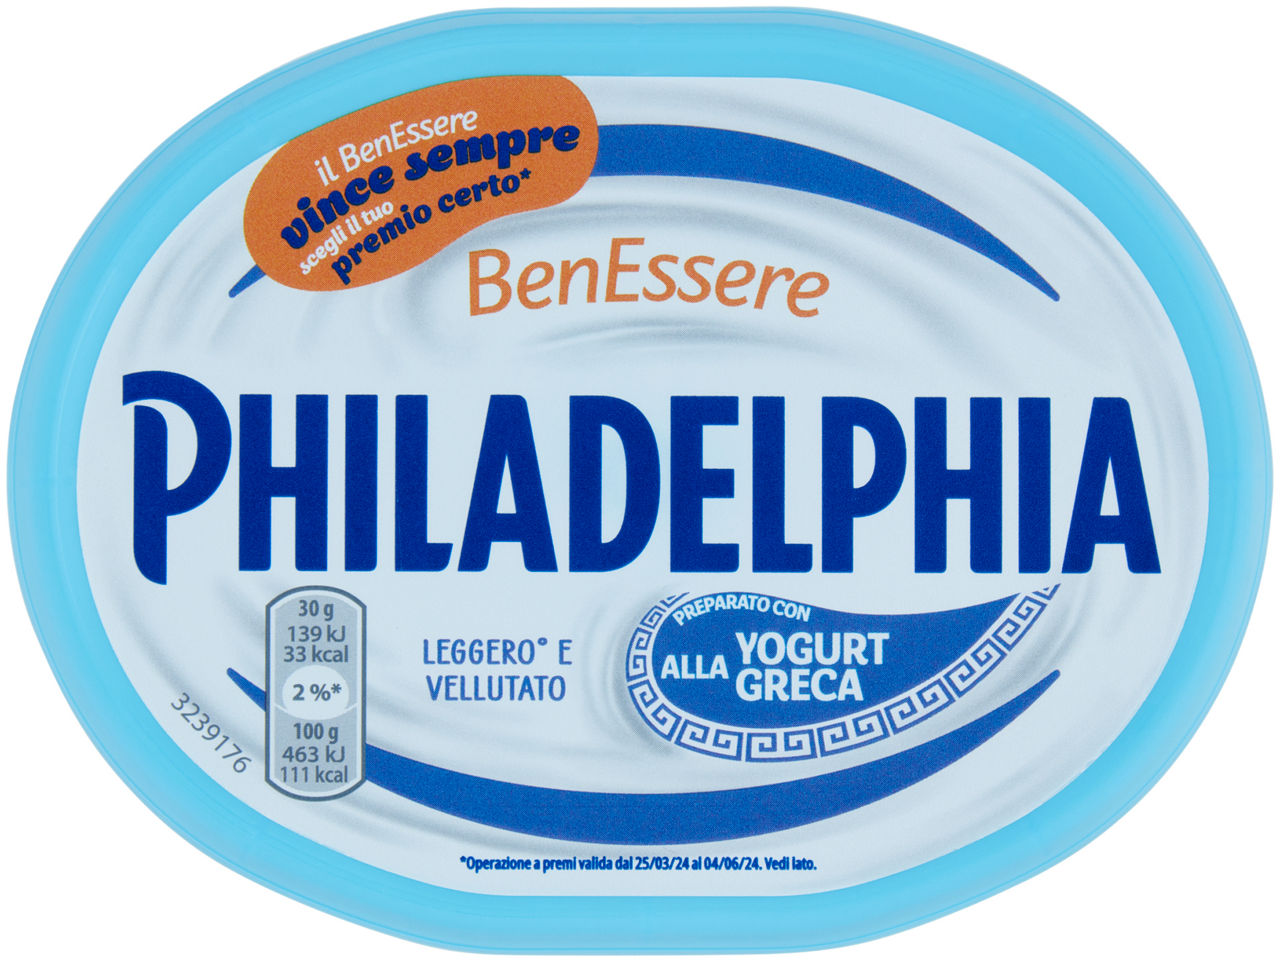 Philadelphia benessere formaggio fresco spalmabile preparato con yogurt alla greca - 175 g